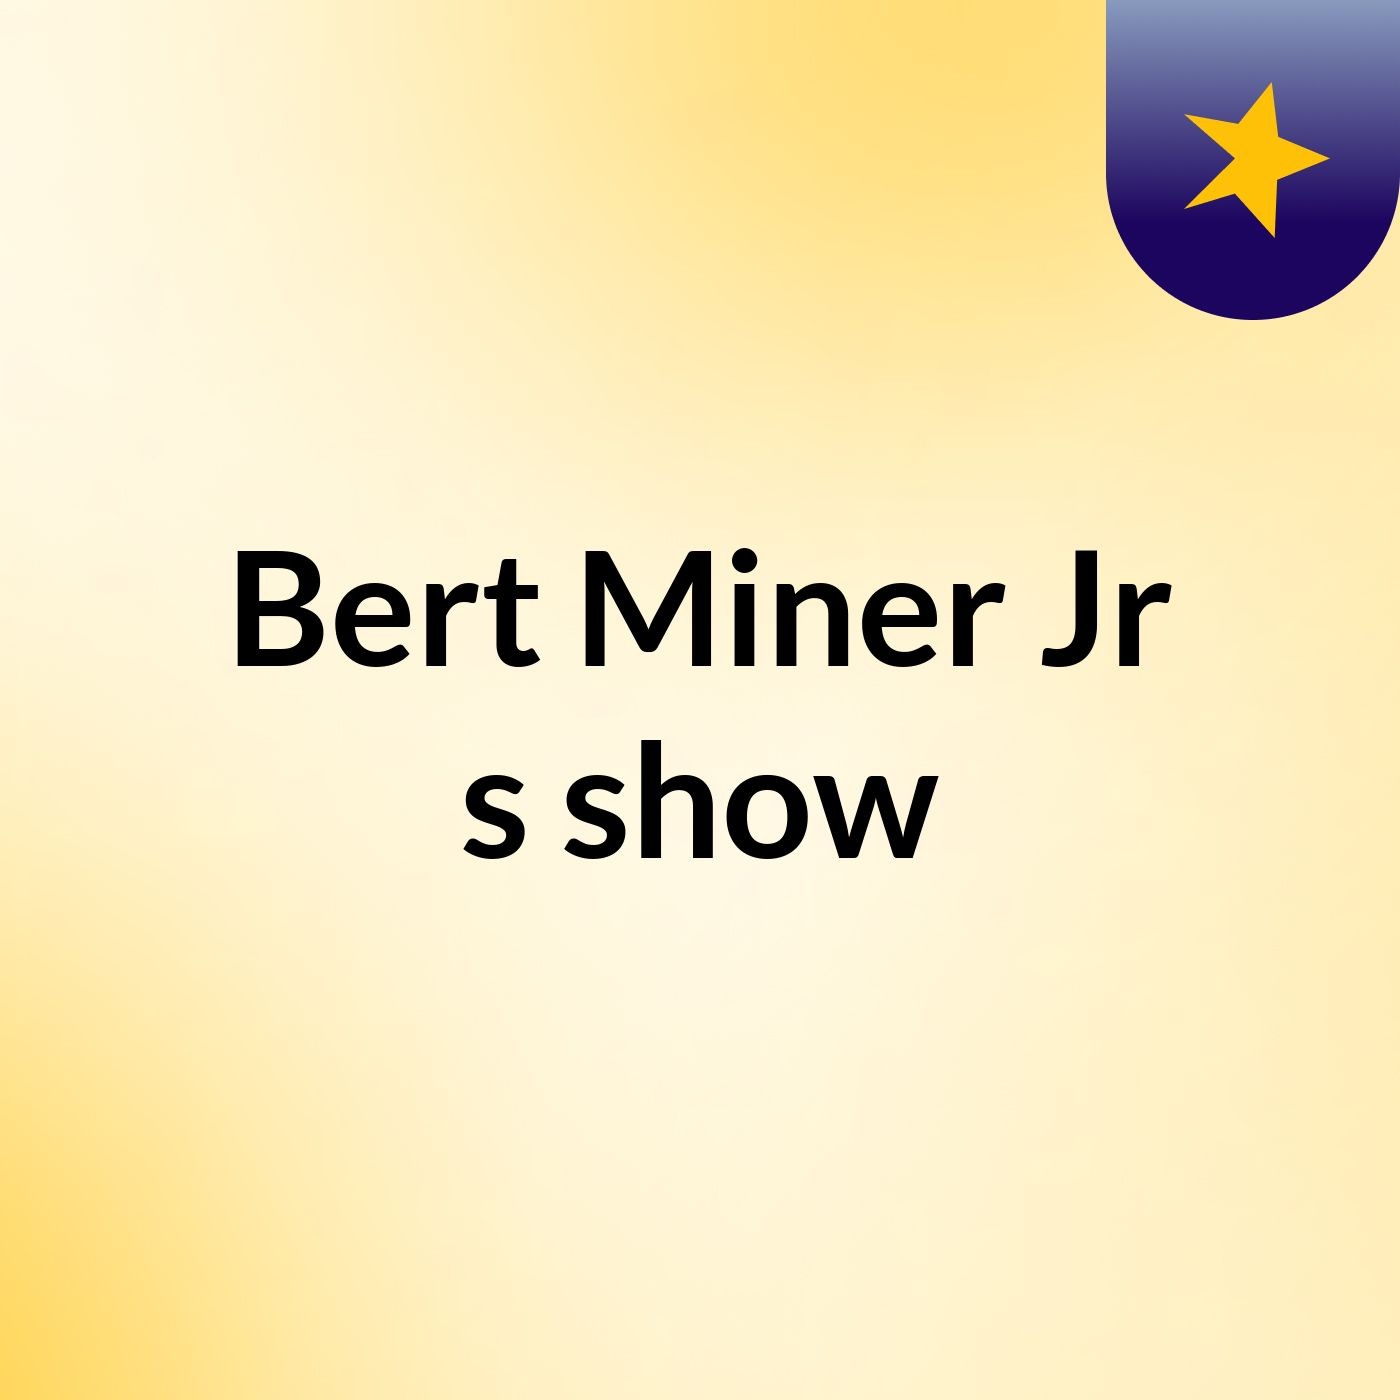 Bert Miner Jr's show